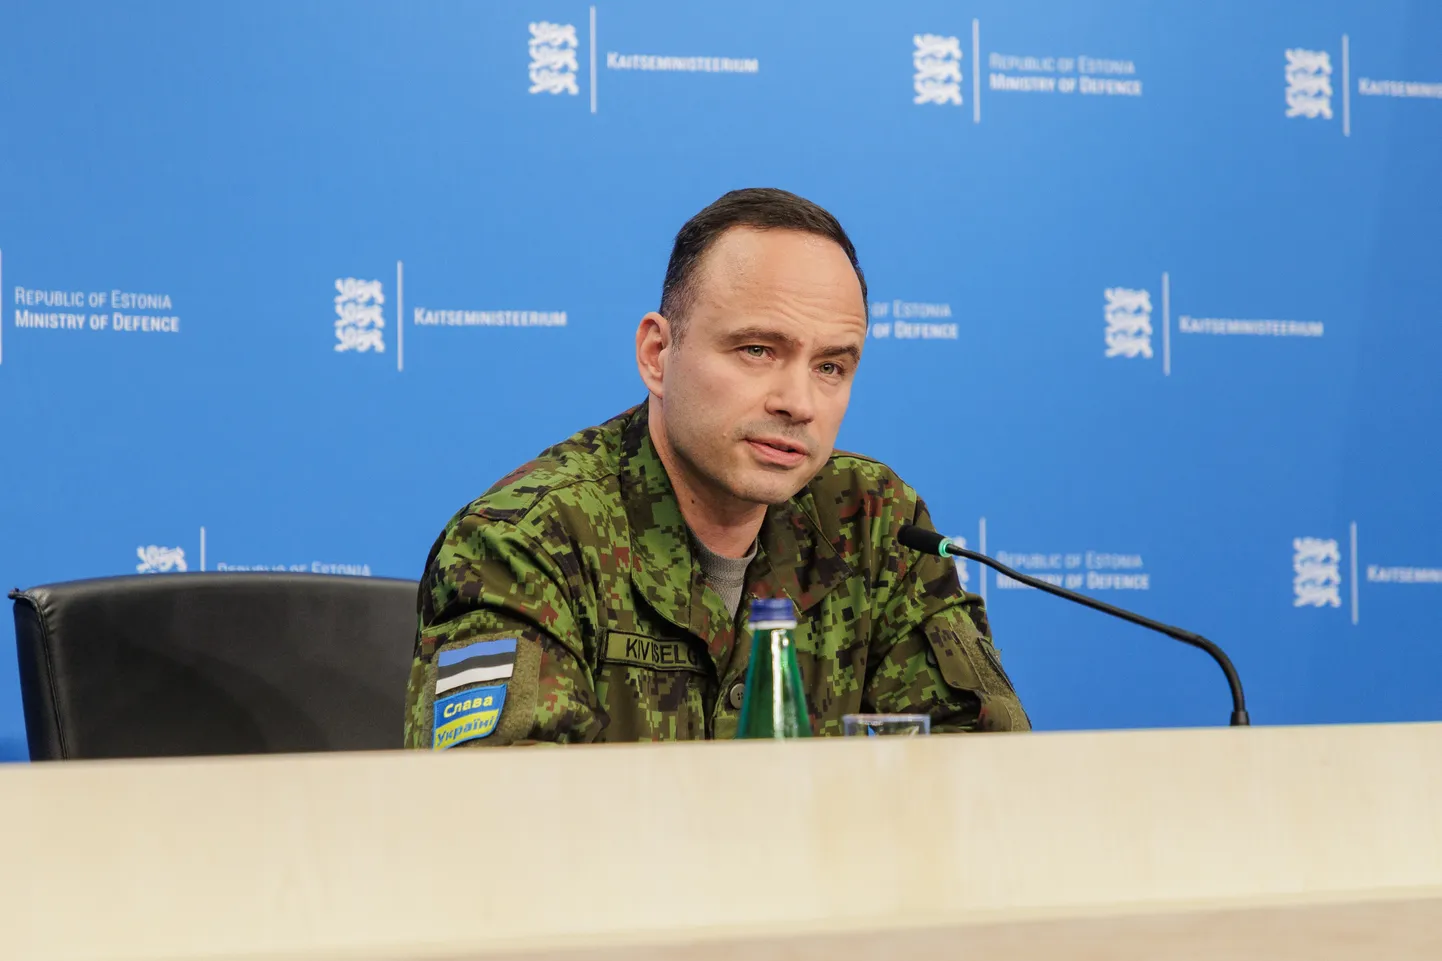 Kaitseväe luurekeskuse ülema kolonel Ants Kiviselja sõnul ei ole praegu märke sellest, et Venemaa valmistuks lähiajal või keskpikas perspektiivis sõjaliseks konfliktiks NATOga.